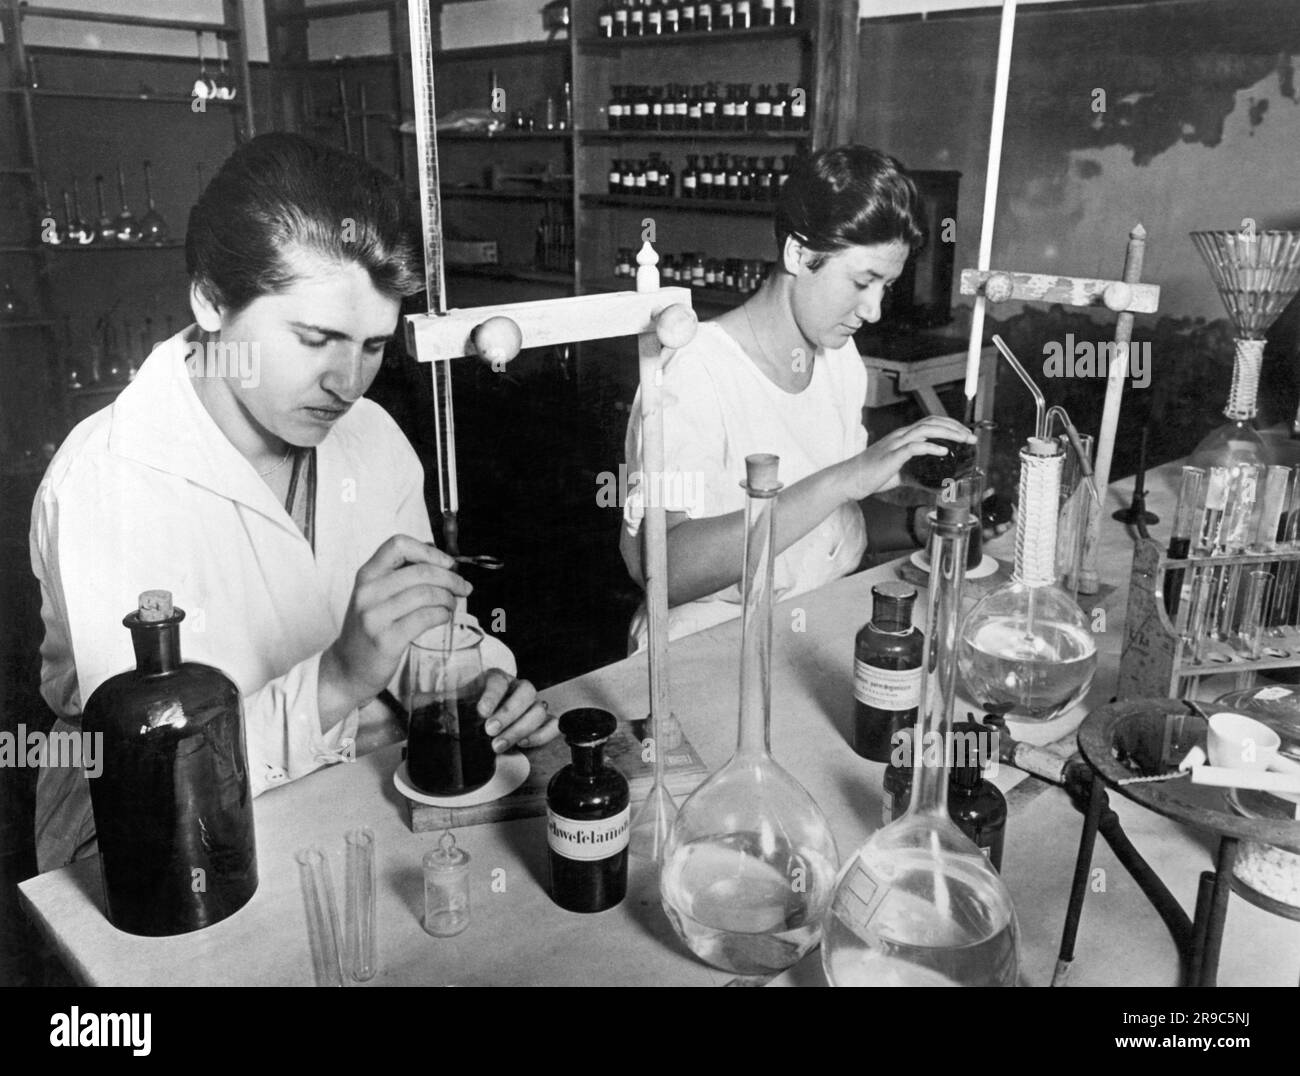 Berlin, Allemagne: c. 1929 les chercheurs de l'Institut bactério-physiologique du Dr Piorkowski à Berlin utilisent les méthodes et les équipements les plus modernes dans la recherche sur les germes qui y est faite. Ici, des assistants de laboratoire sont formés à l'Institut. Banque D'Images